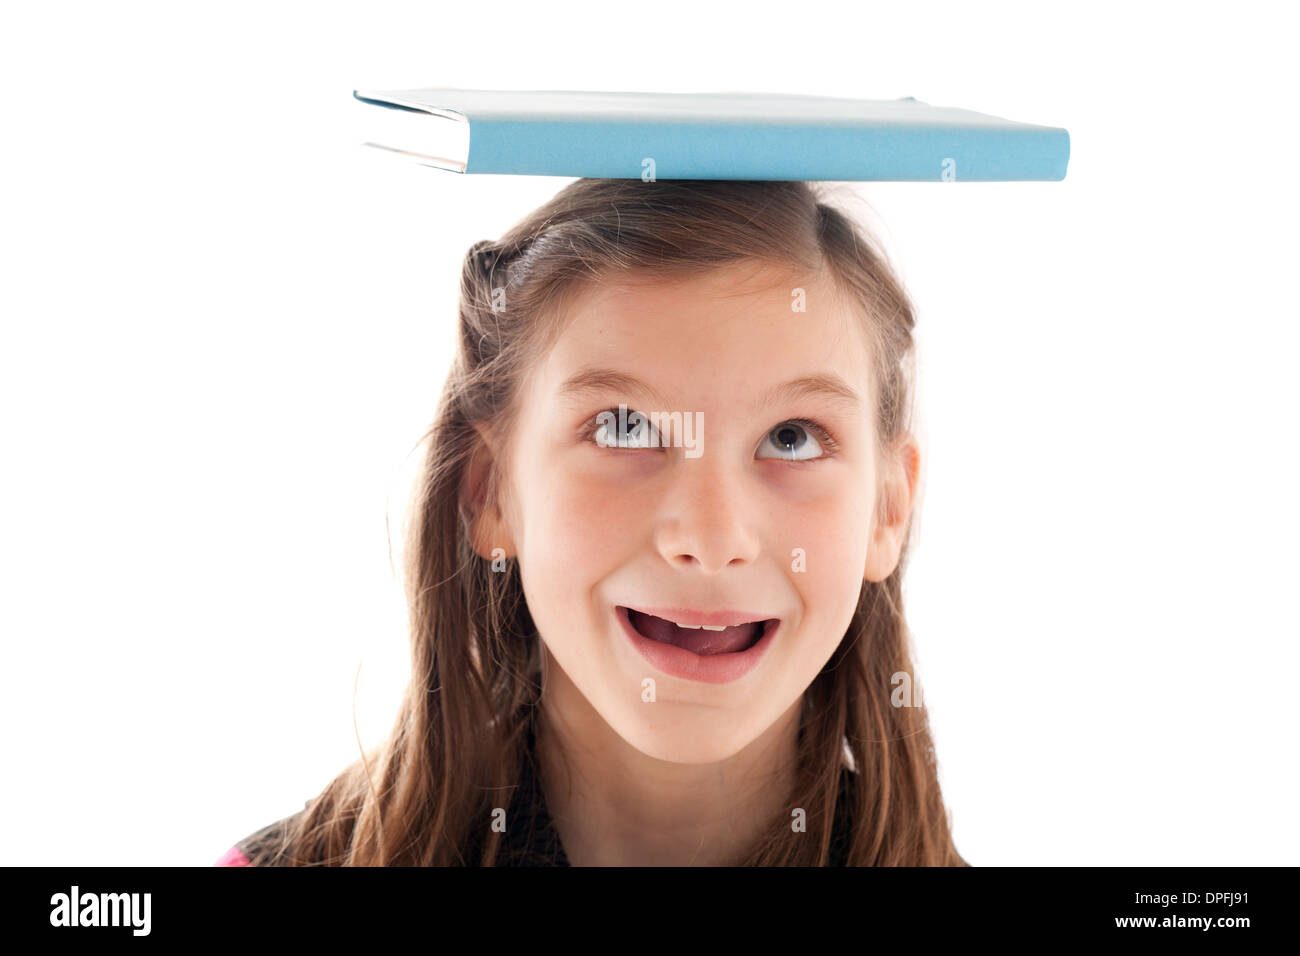 Symbolisches Bild Bildung: lächelndes Mädchen hält ein Buch auf dem Kopf Stockfoto